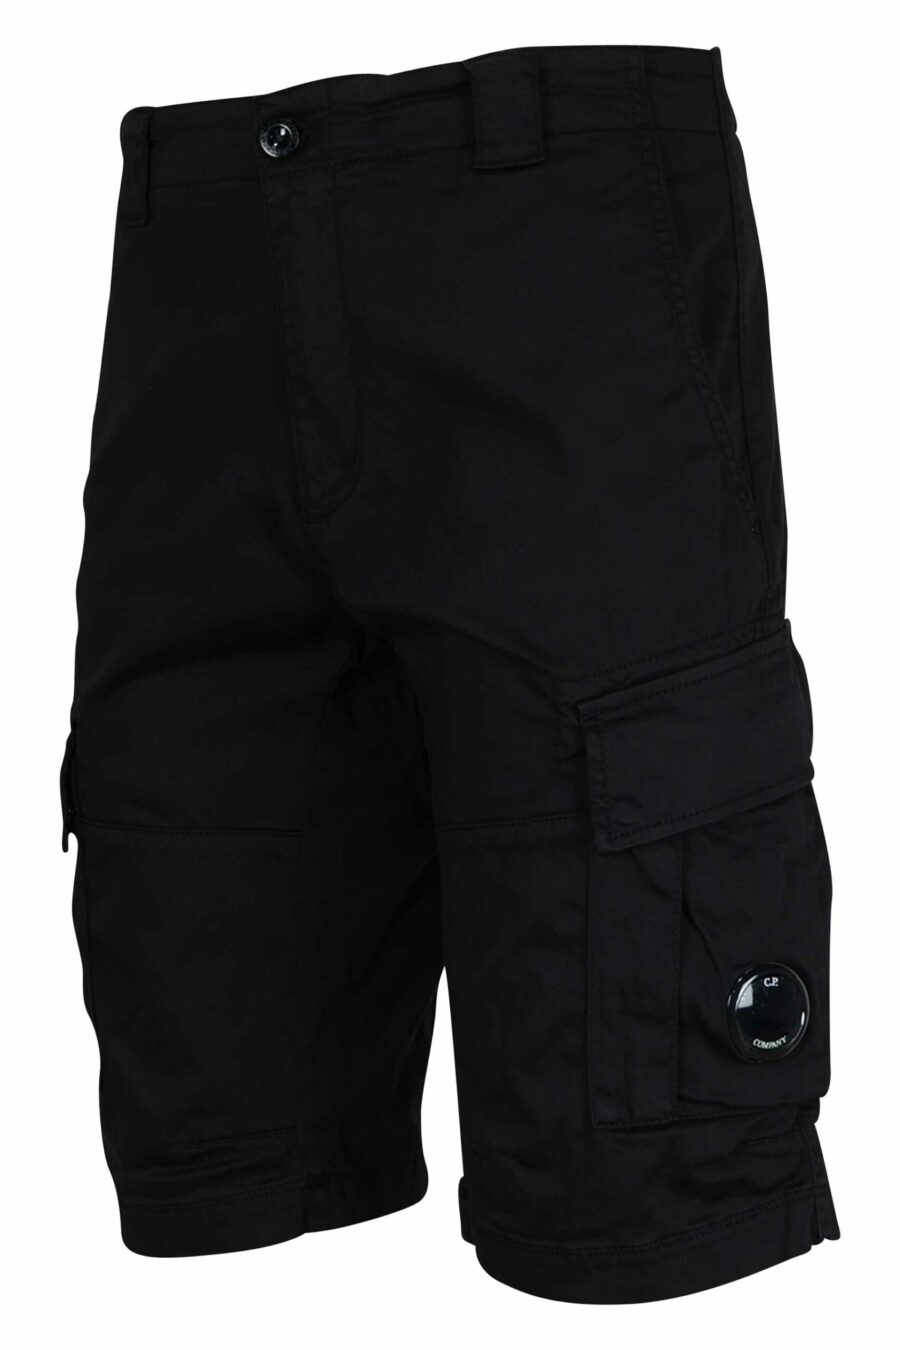 Pantalón corto negro estilo cargo con minilogo lente - 7620943698381 1 scaled